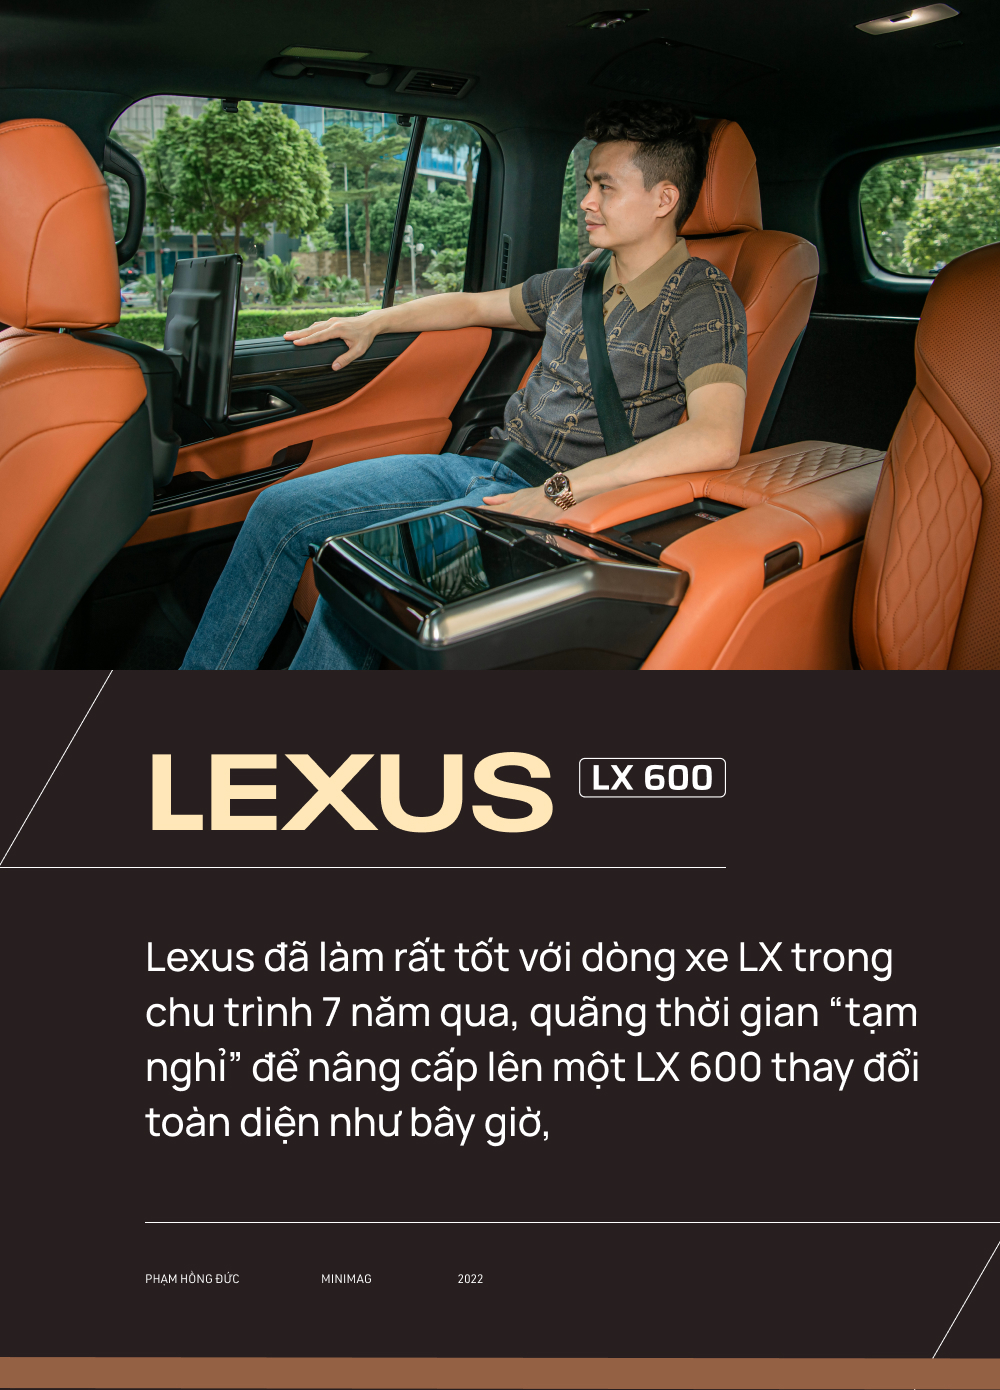 Từ Innova qua 3 đời Lexus, bác sĩ 8X chọn tiếp LX 600: ‘Dùng Lexus rồi khó sang thương hiệu khác’ - Ảnh 19.